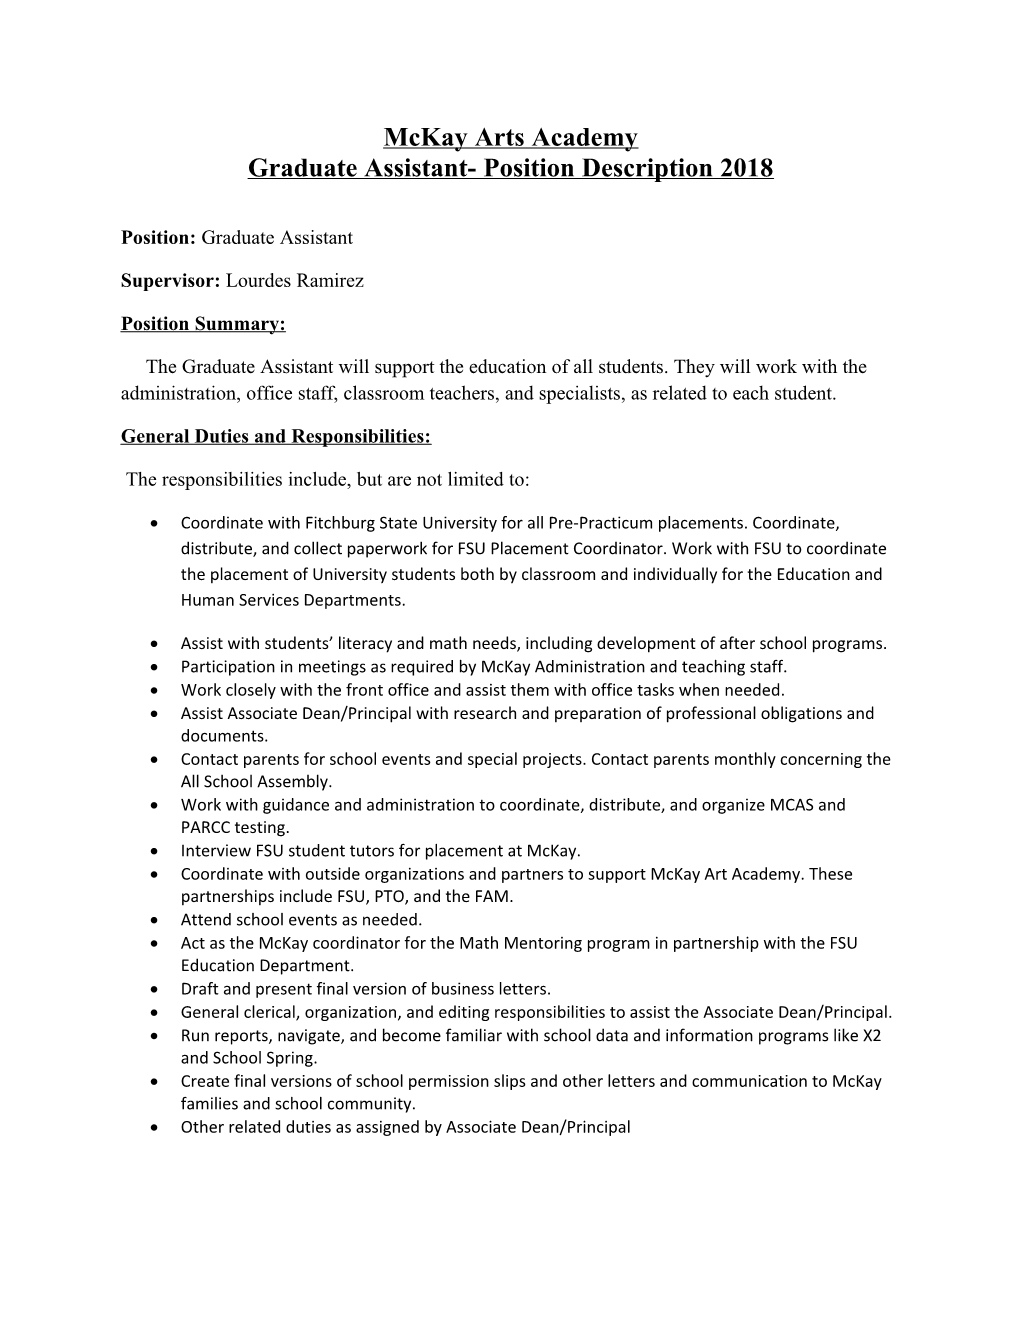 Graduate Assistant- Position Description 2018